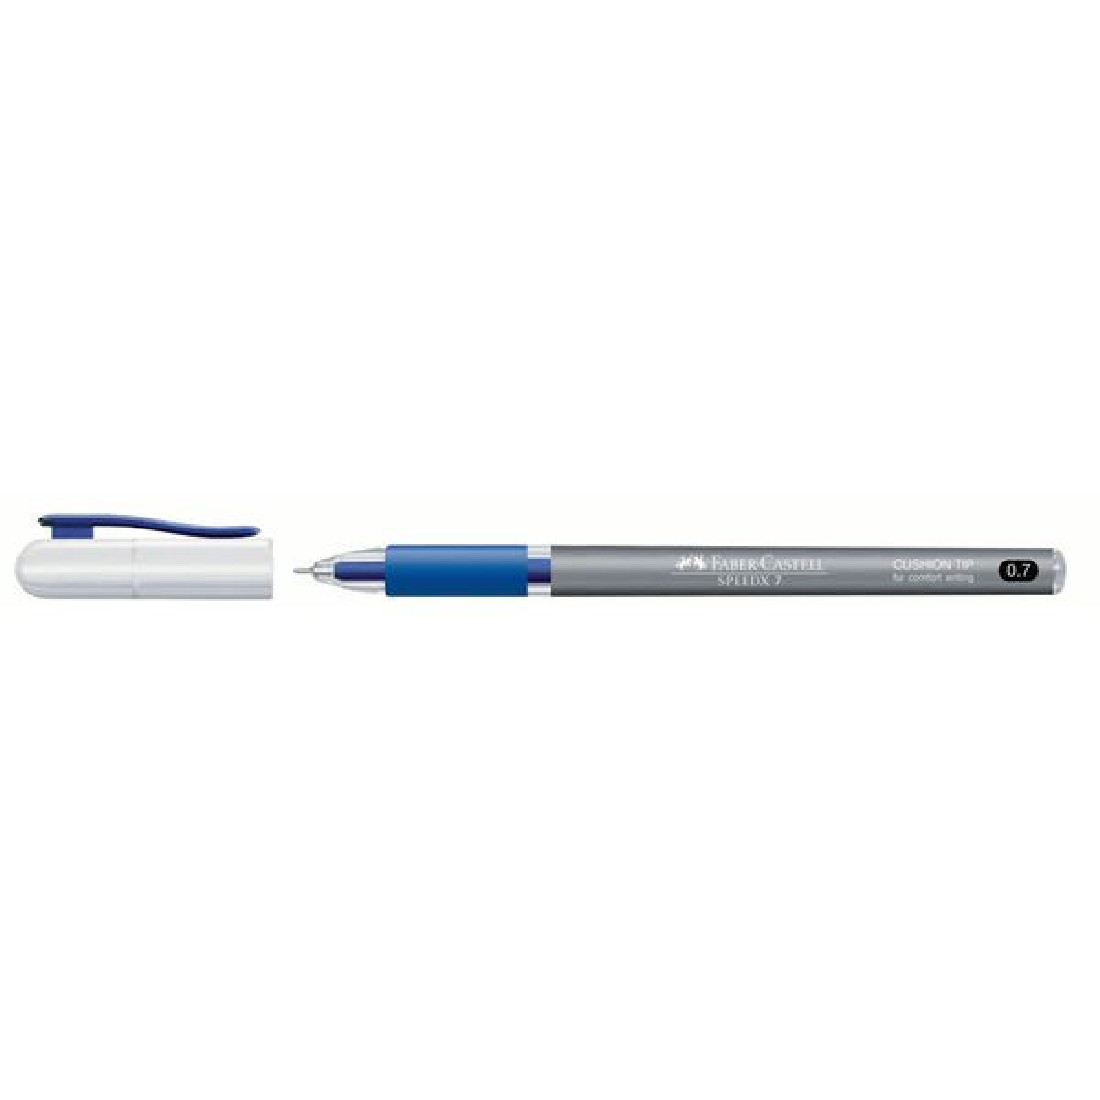 Faber Castell Στυλό μπλε SpeedX 0,7mm 546251